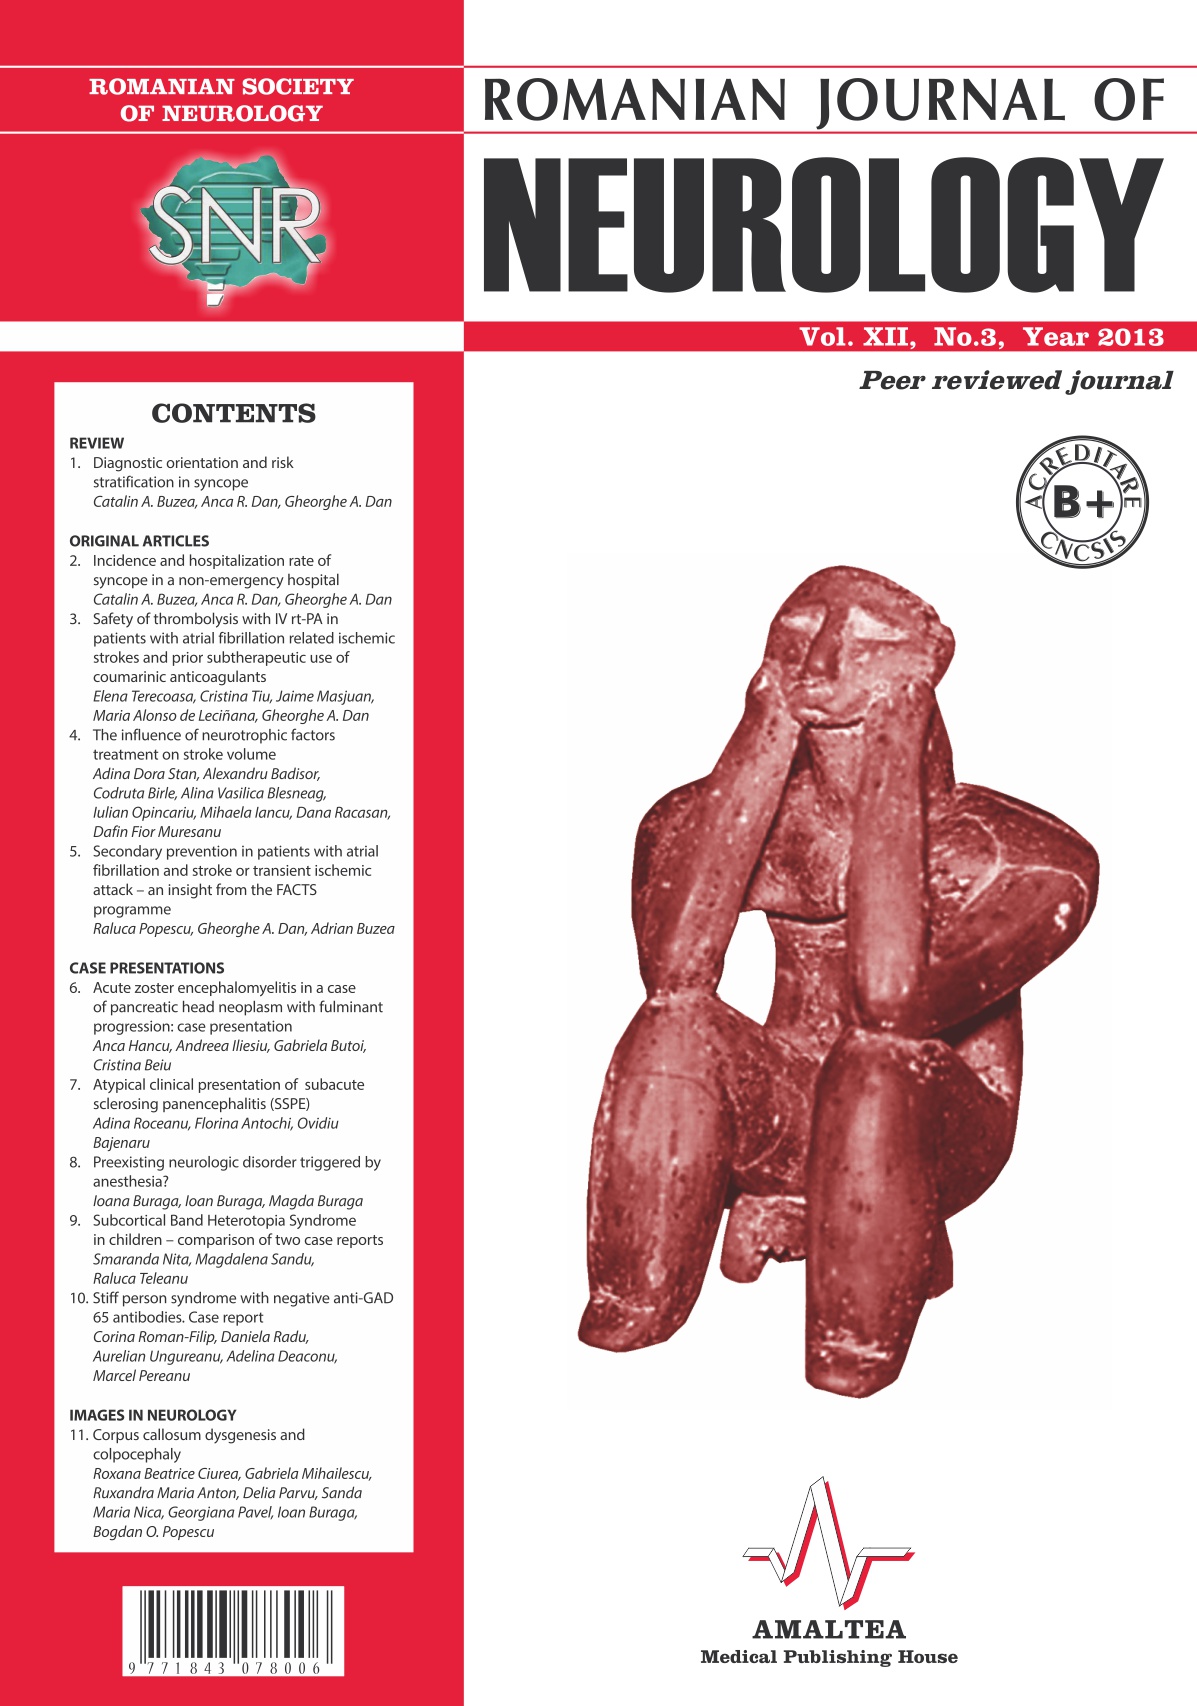 Romanian Journal of Neurology, Volume XII, No. 3, 2013